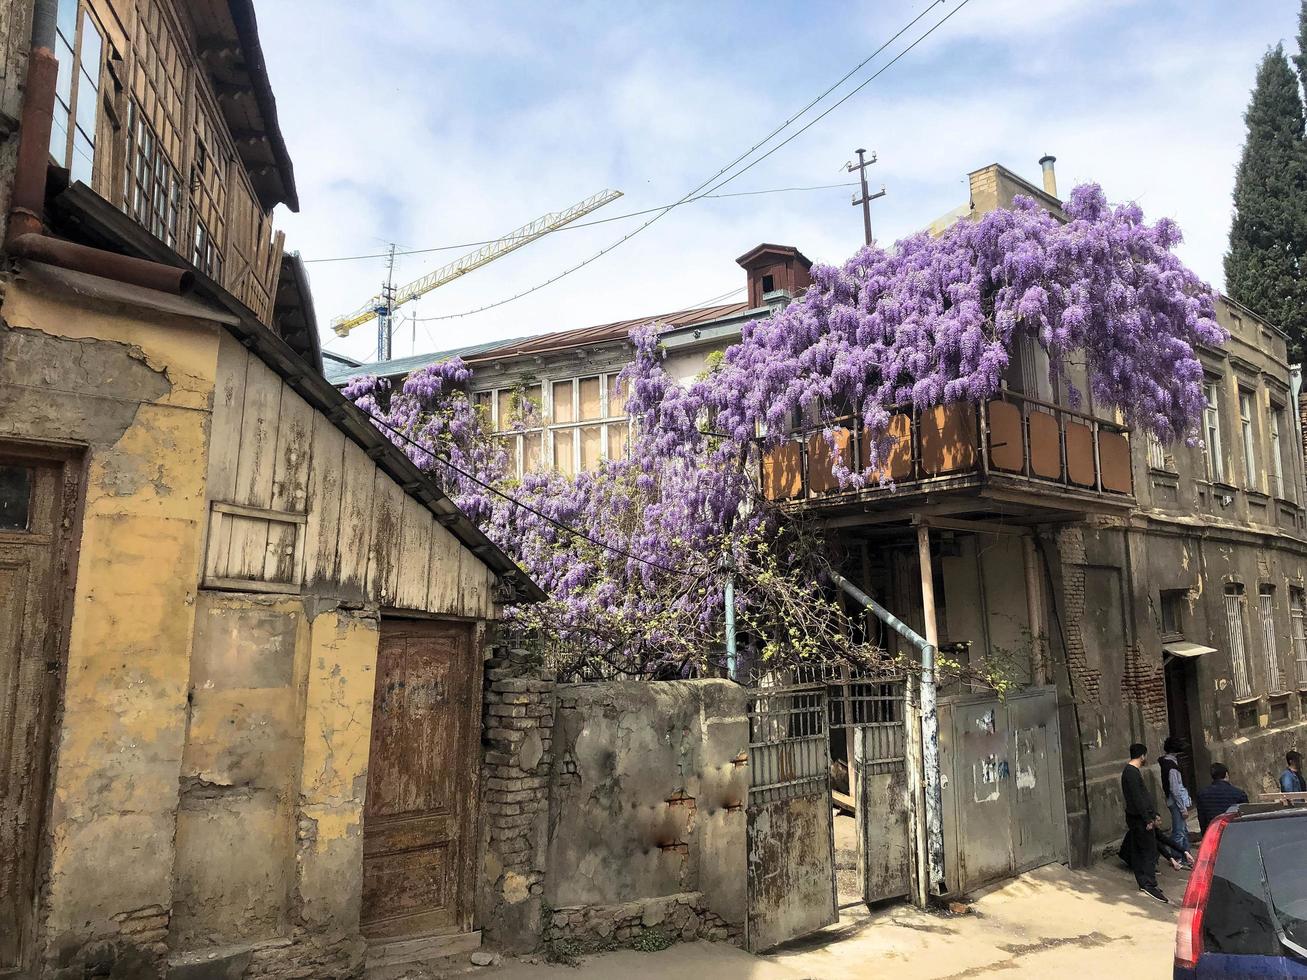 hermosa casa marrón antigua de tres pisos, barrios marginales entrelazados con arbustos de lila púrpura en la antigua zona urbana foto